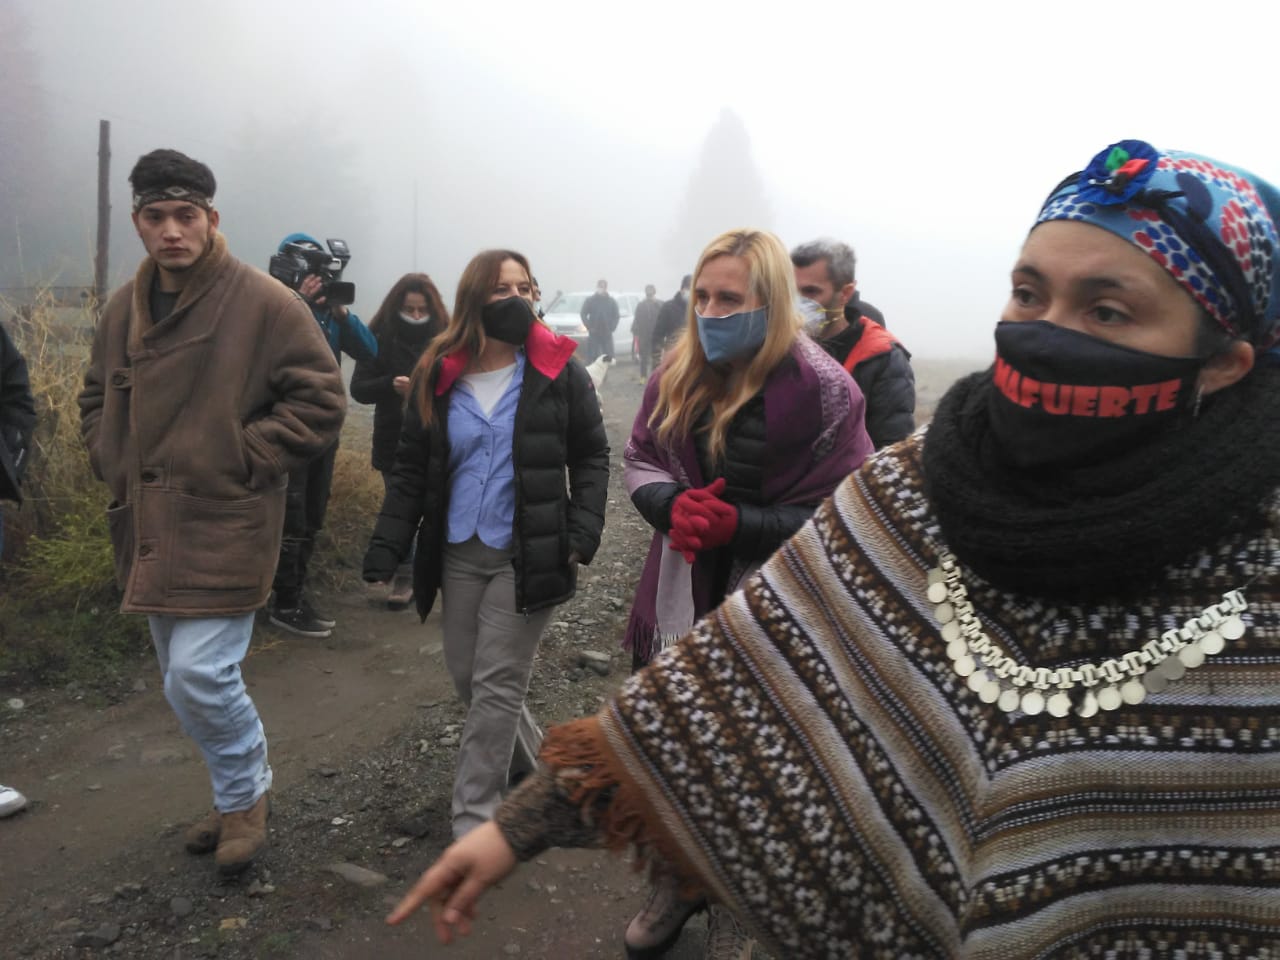 Ordarda (de camisa celeste), en una recorrida durante uno de los conflictos por protestas mapuches. 